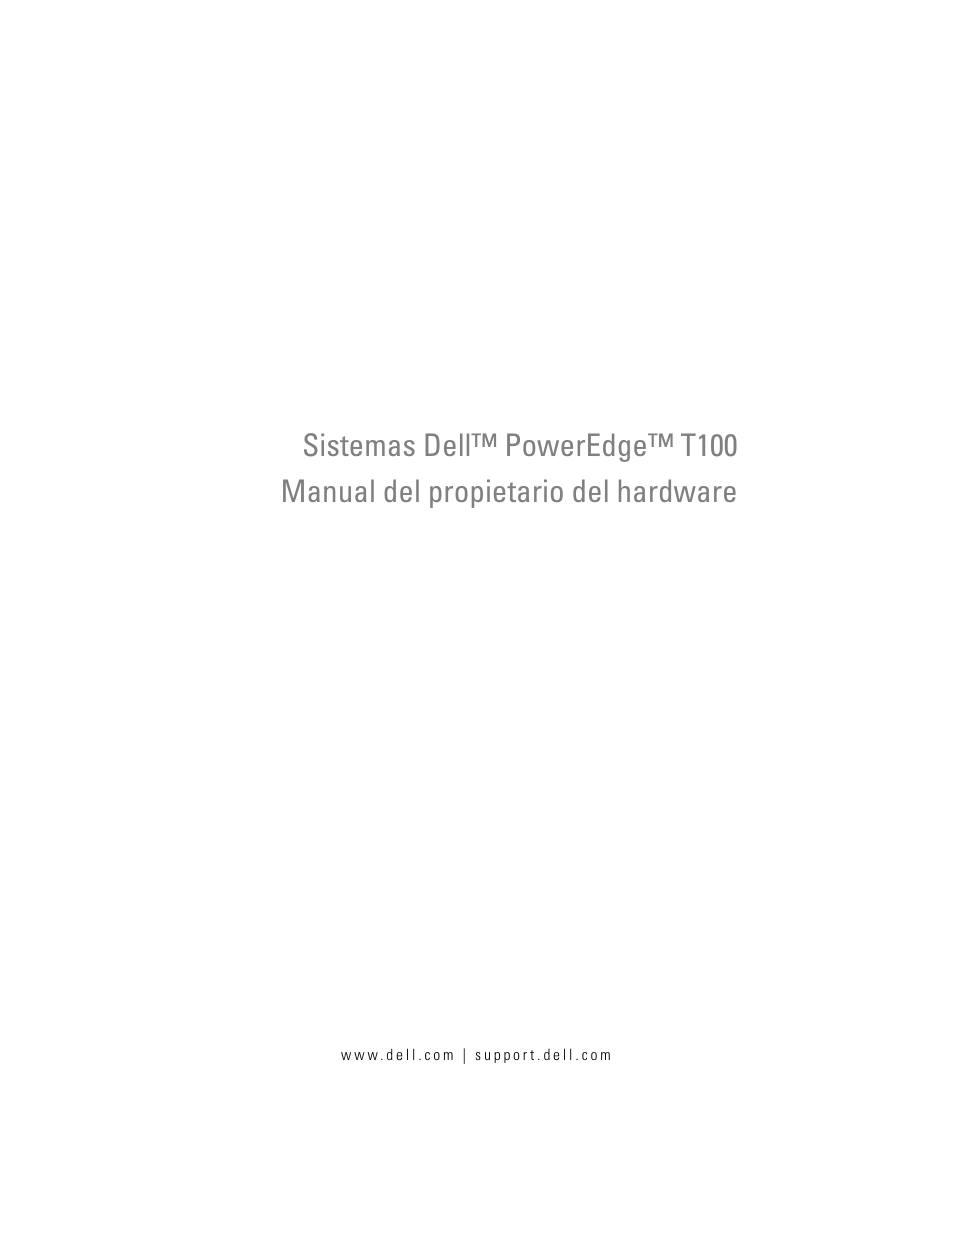 Dell PowerEdge T100 Manual del usuario | Páginas: 180